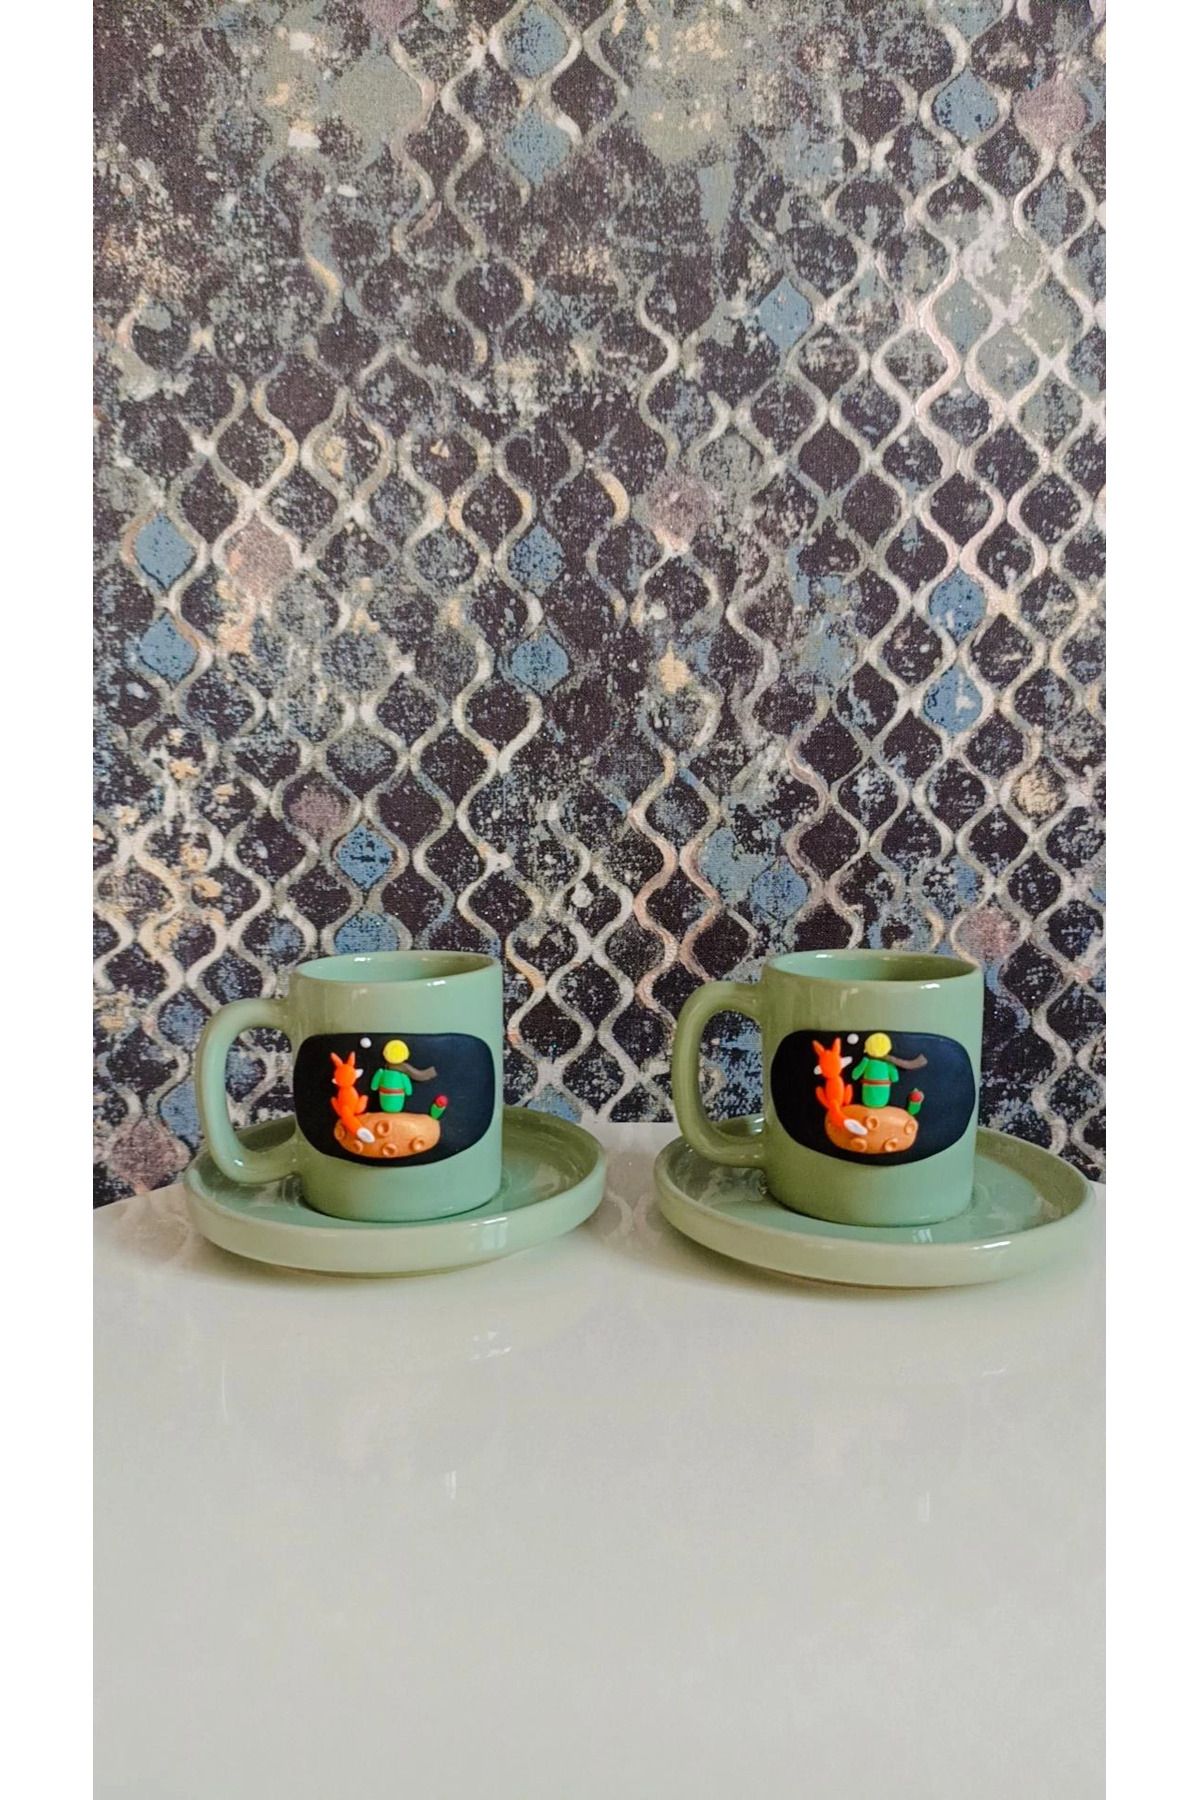 sultanworks Küçük Prens 2 Li Kahve Fincanı Özel Tasarım El Yapimi Yeşil Renk Fincan Seti